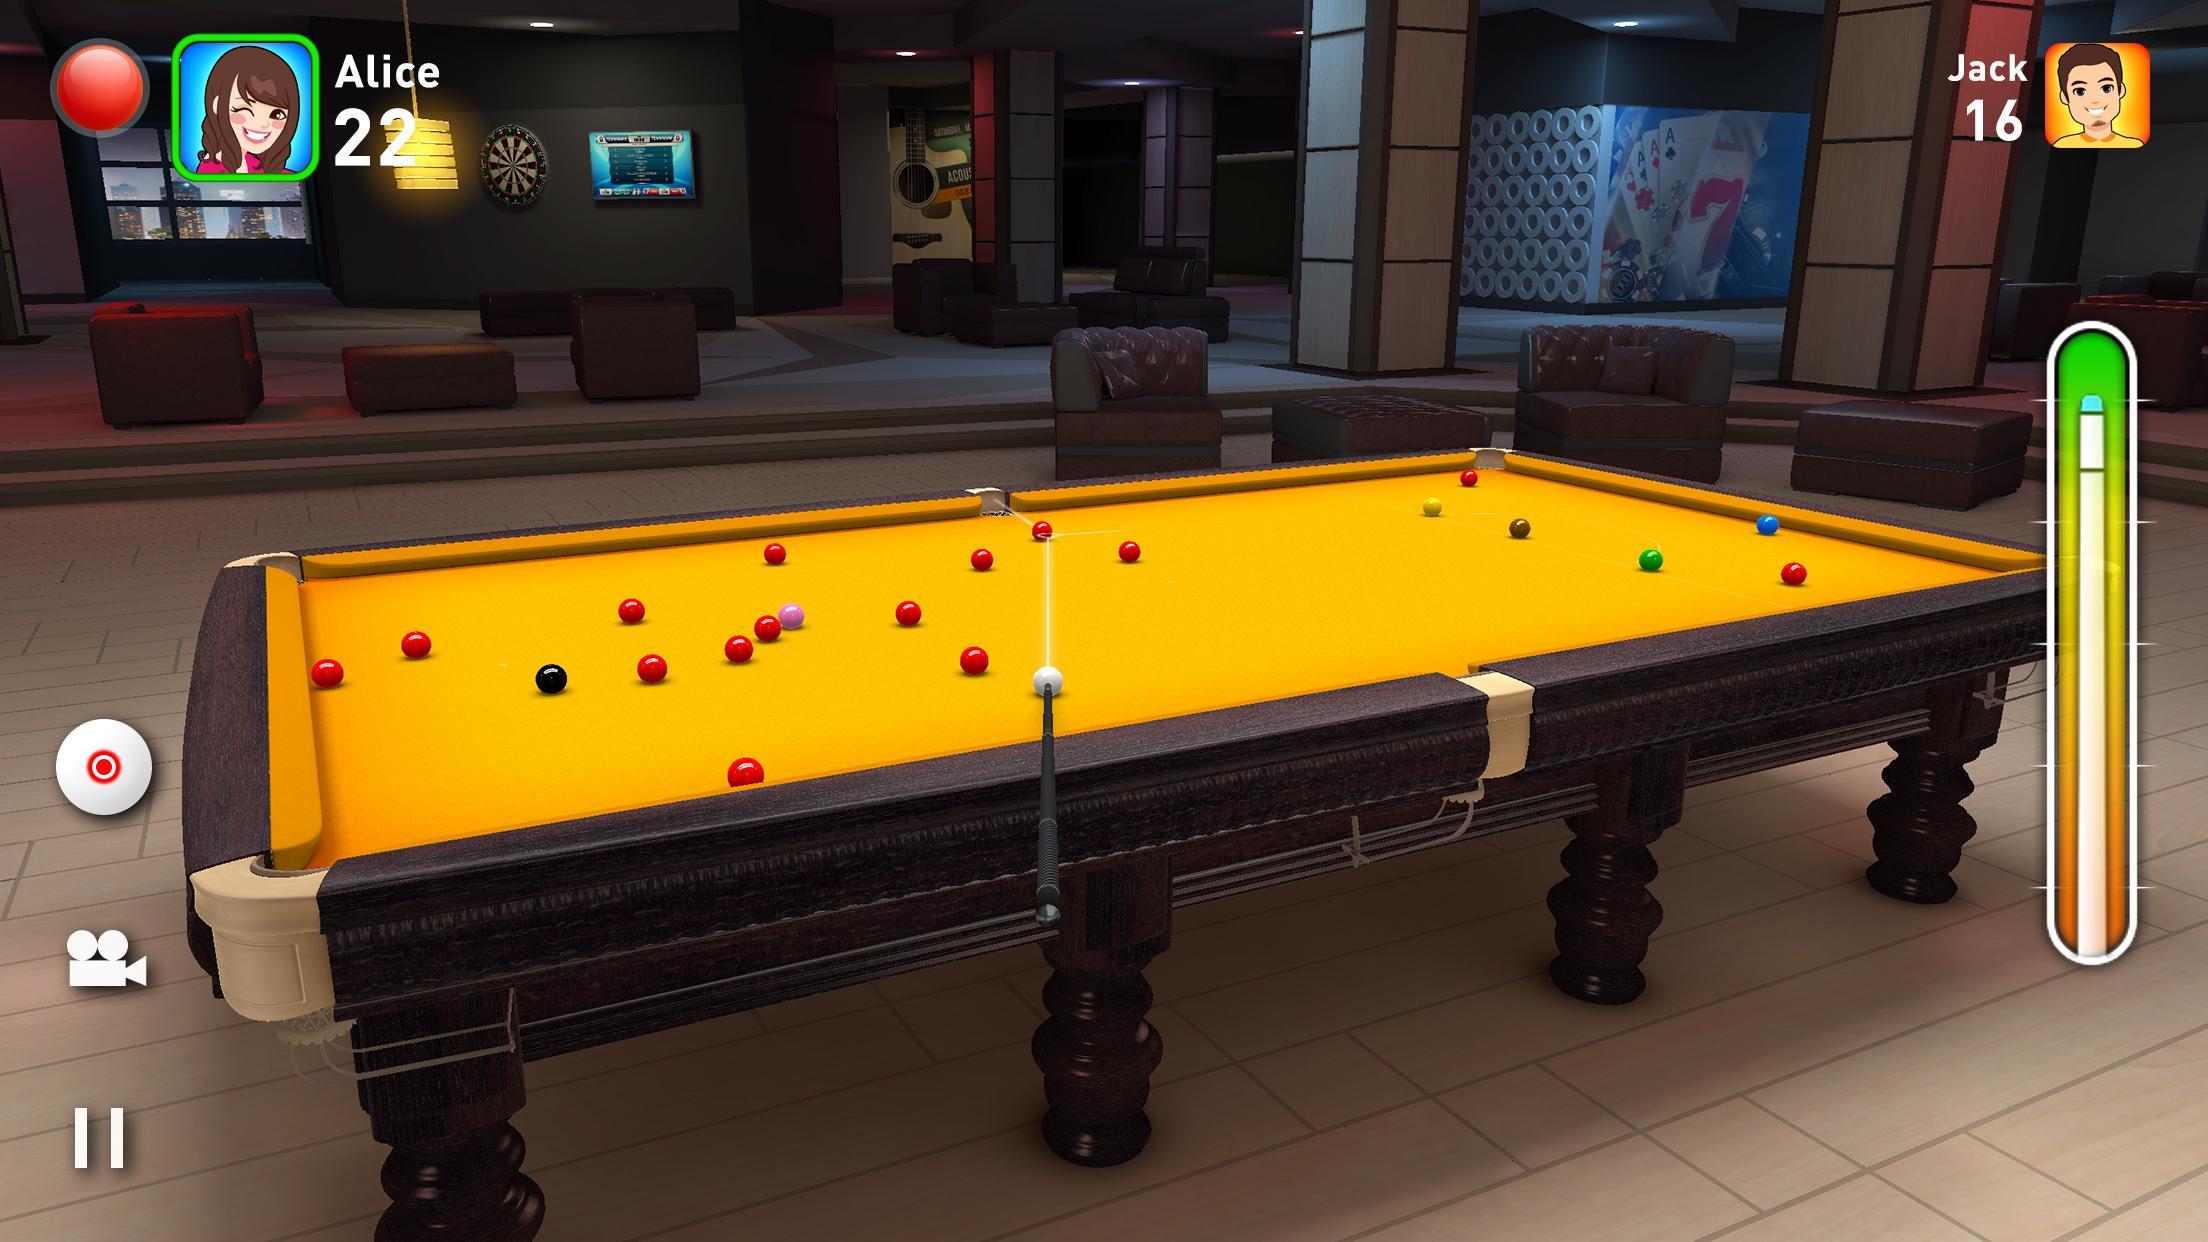 Estrelas do Snooker Esporte Online 3D versão móvel andróide iOS